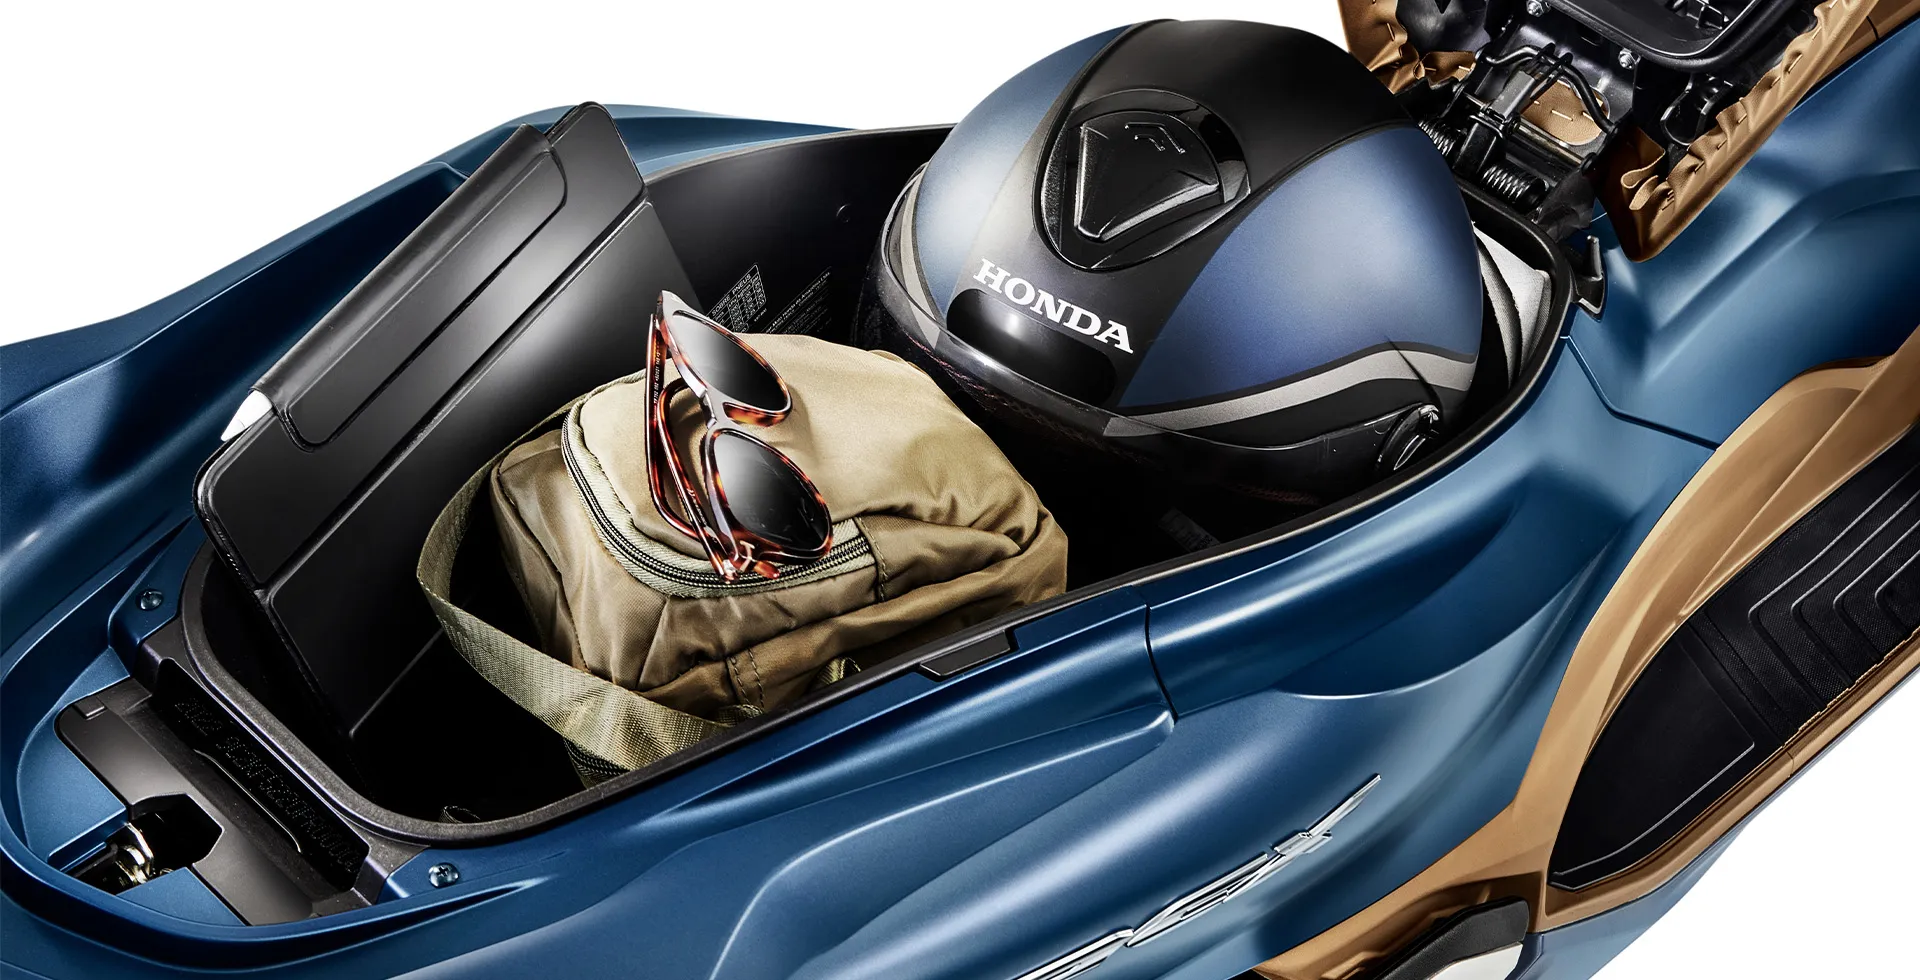 Foto com detalhe de uma moto da Honda